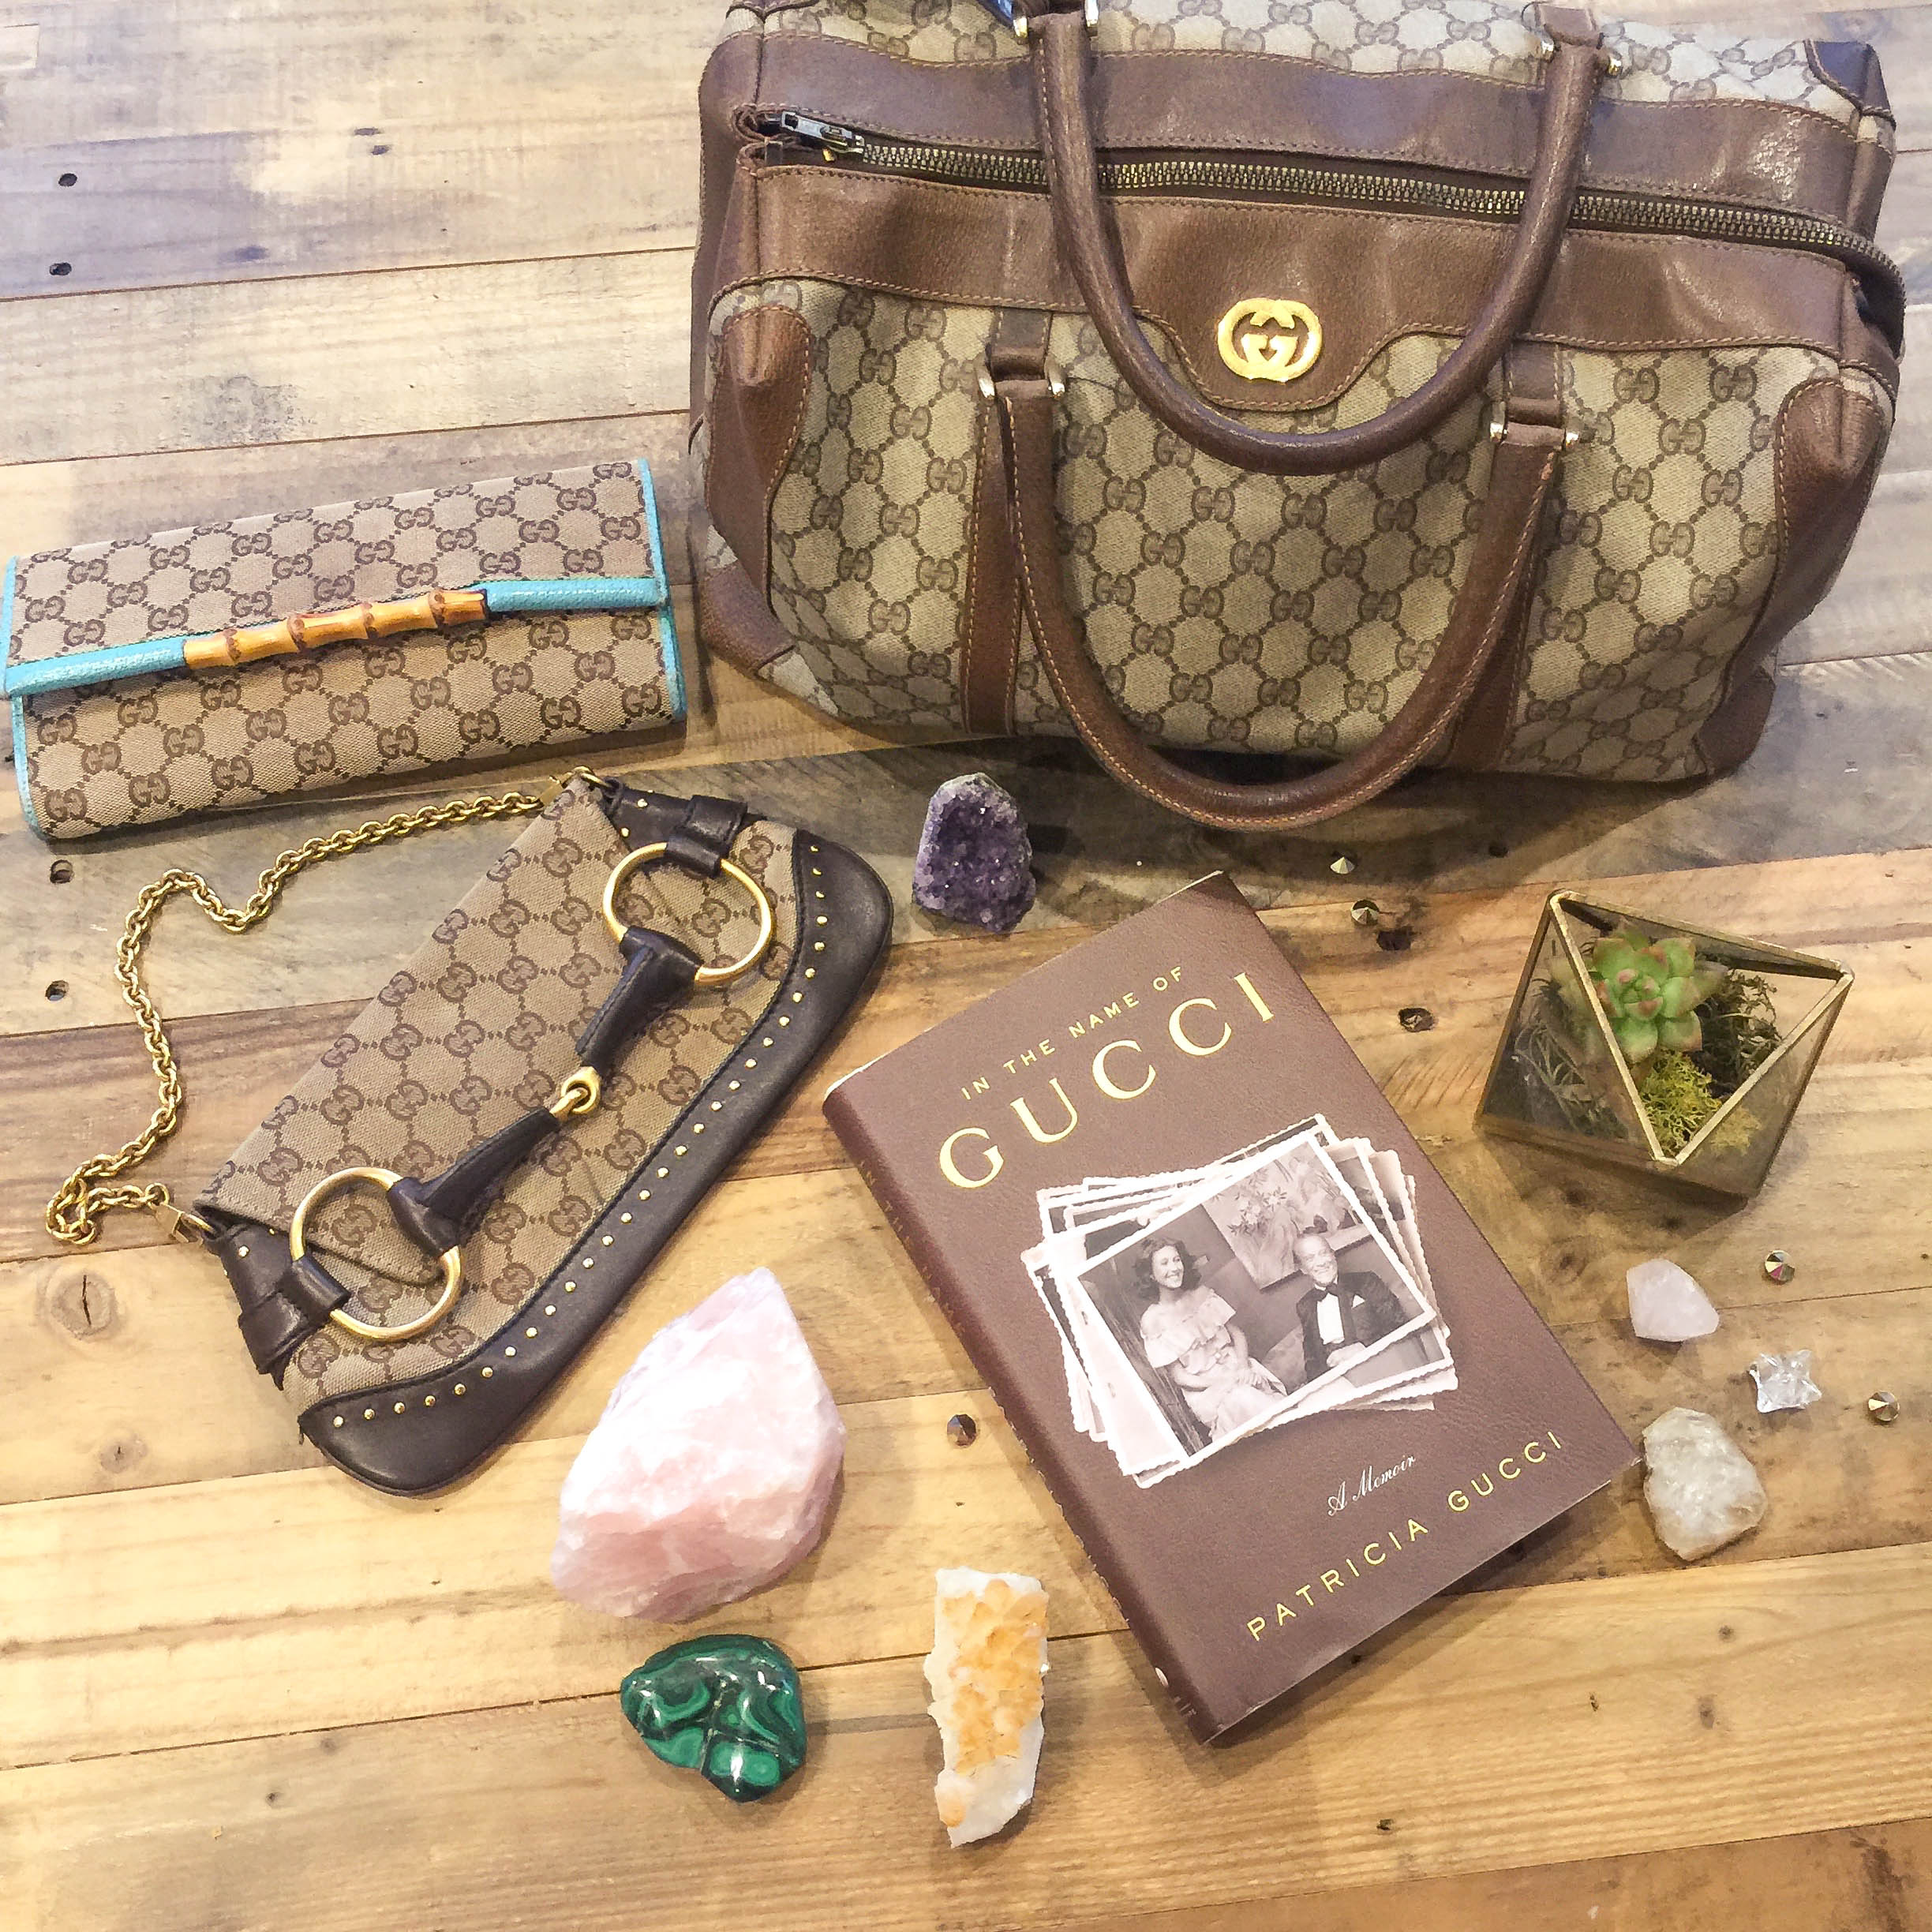 Gucci Bags and Memoir